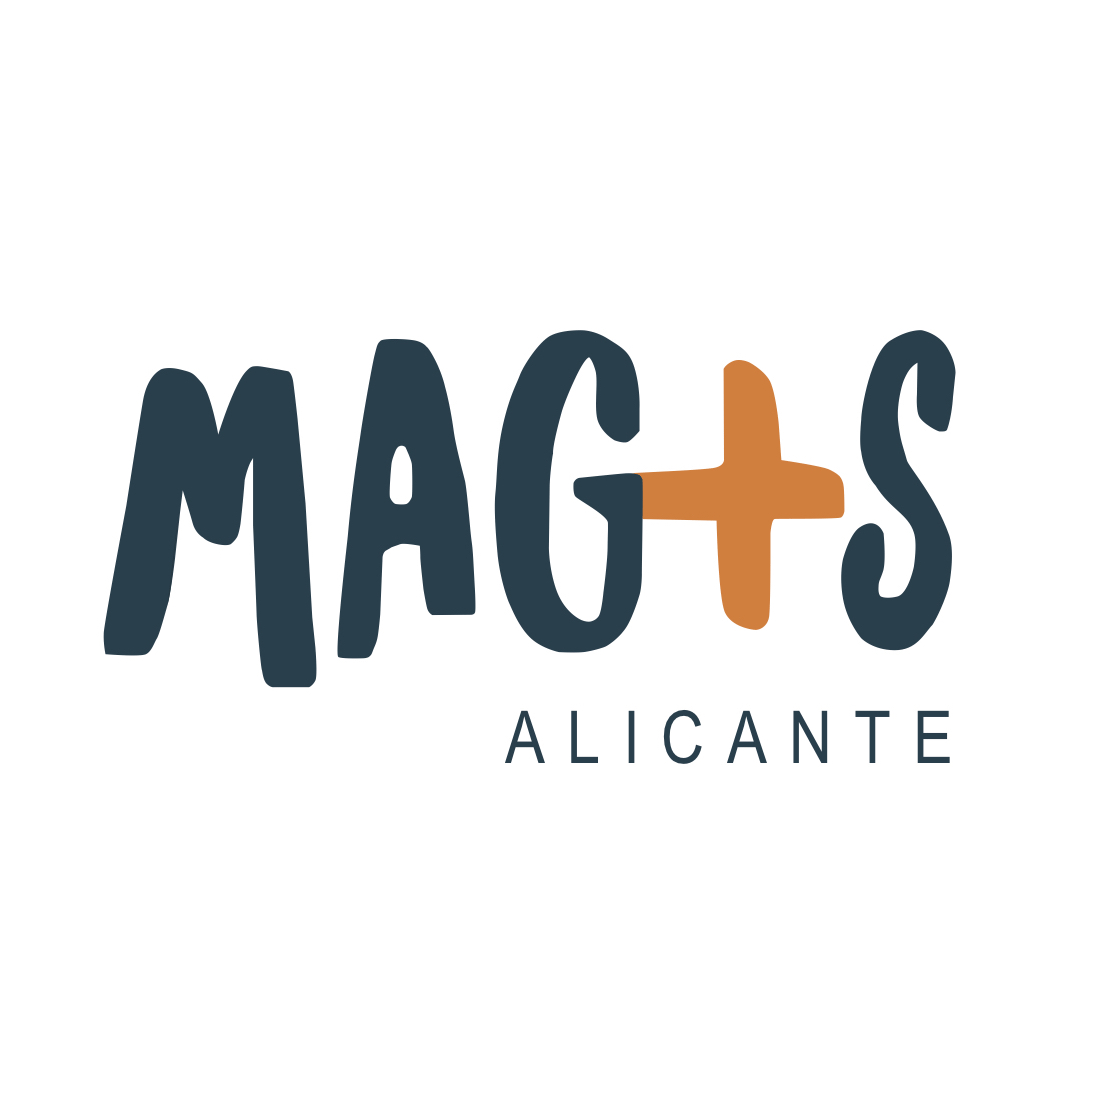 MAG+S ALICANTE